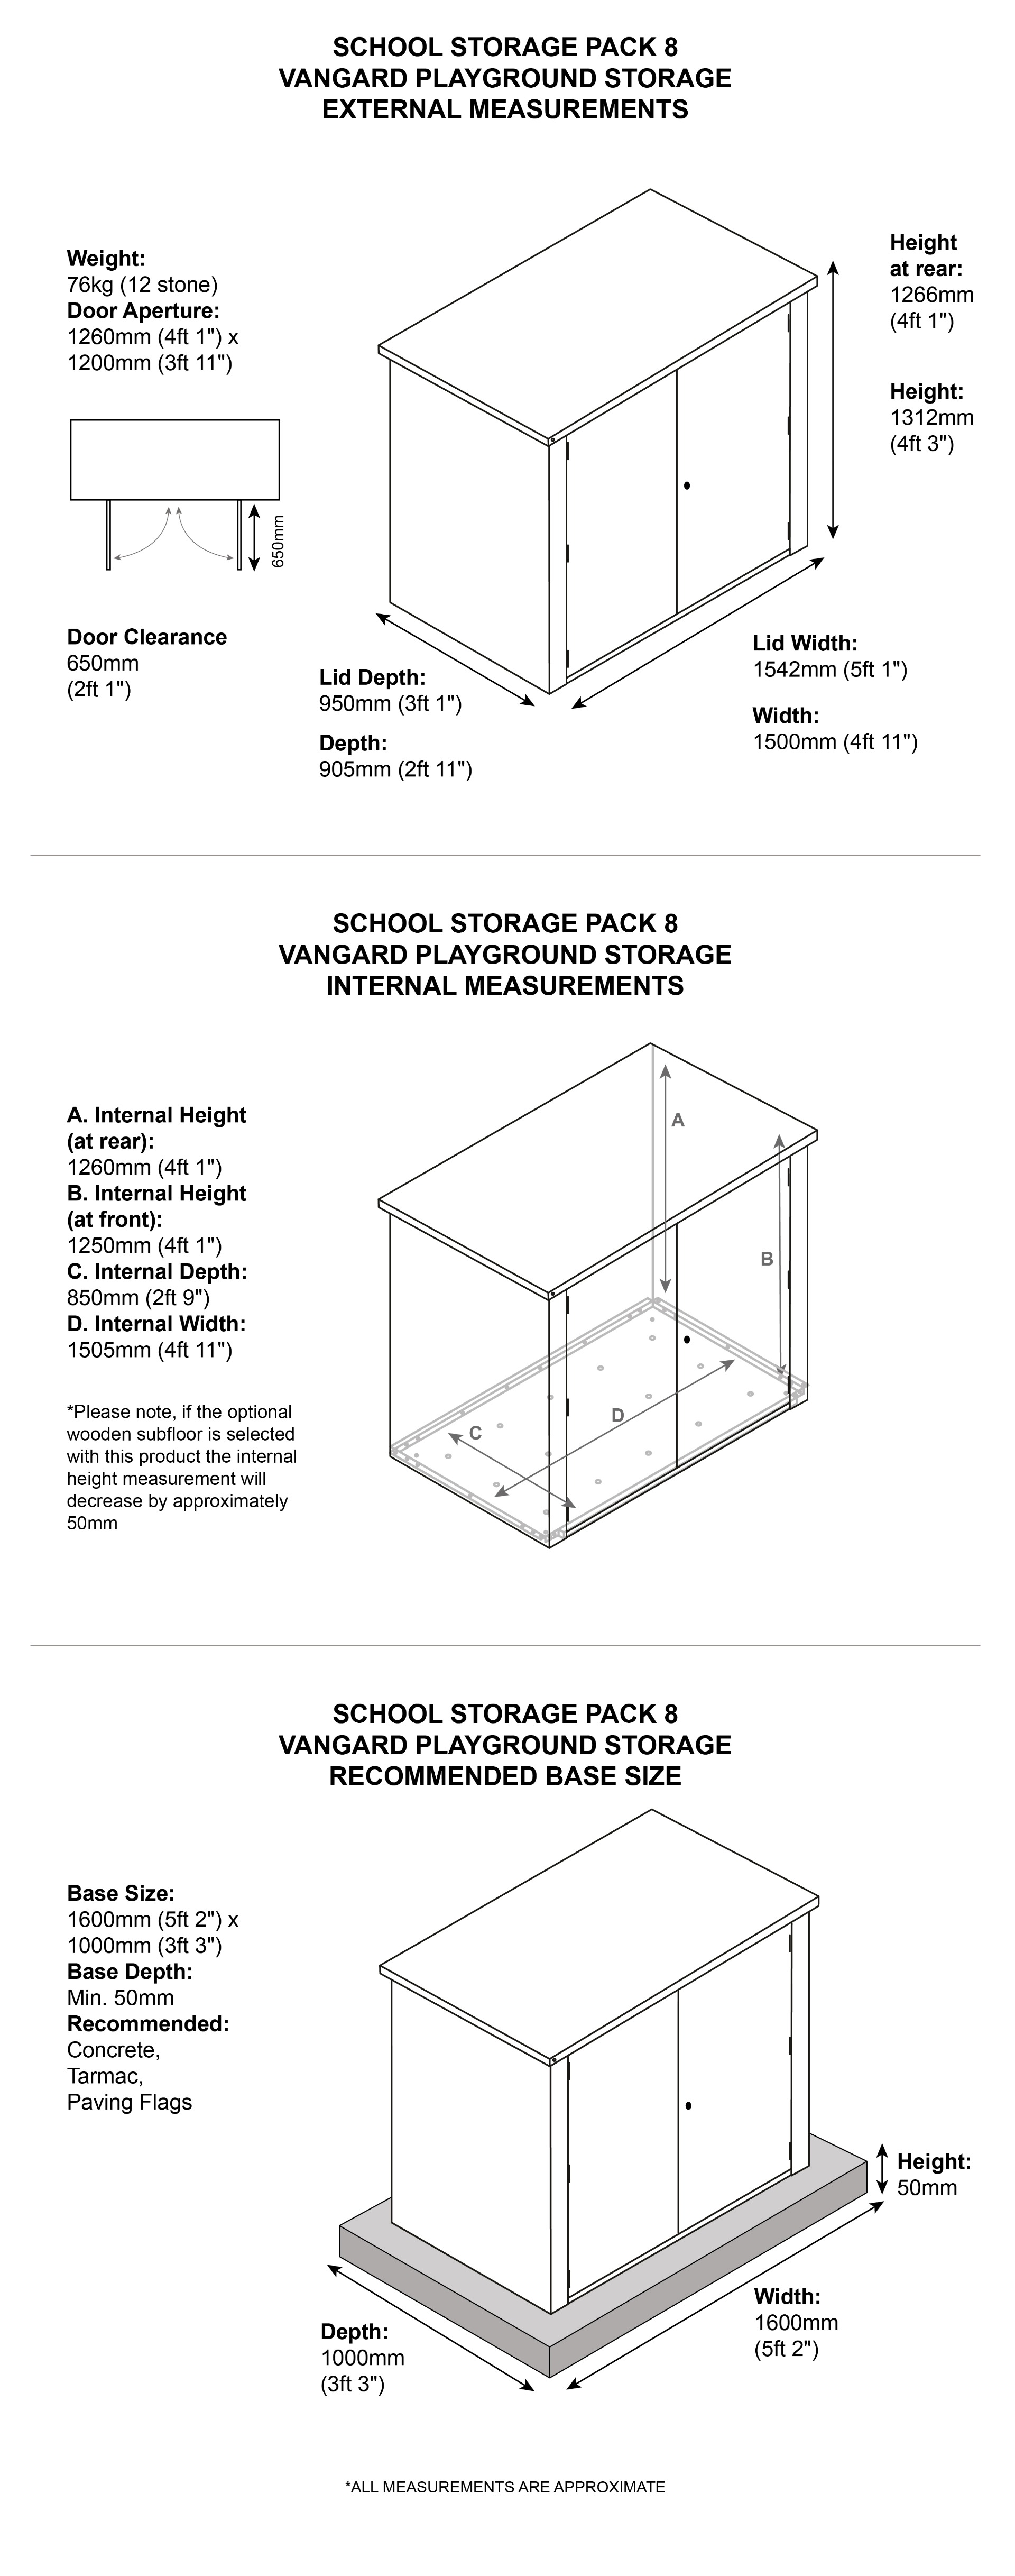 School Storage Pack: 8 Dimensions